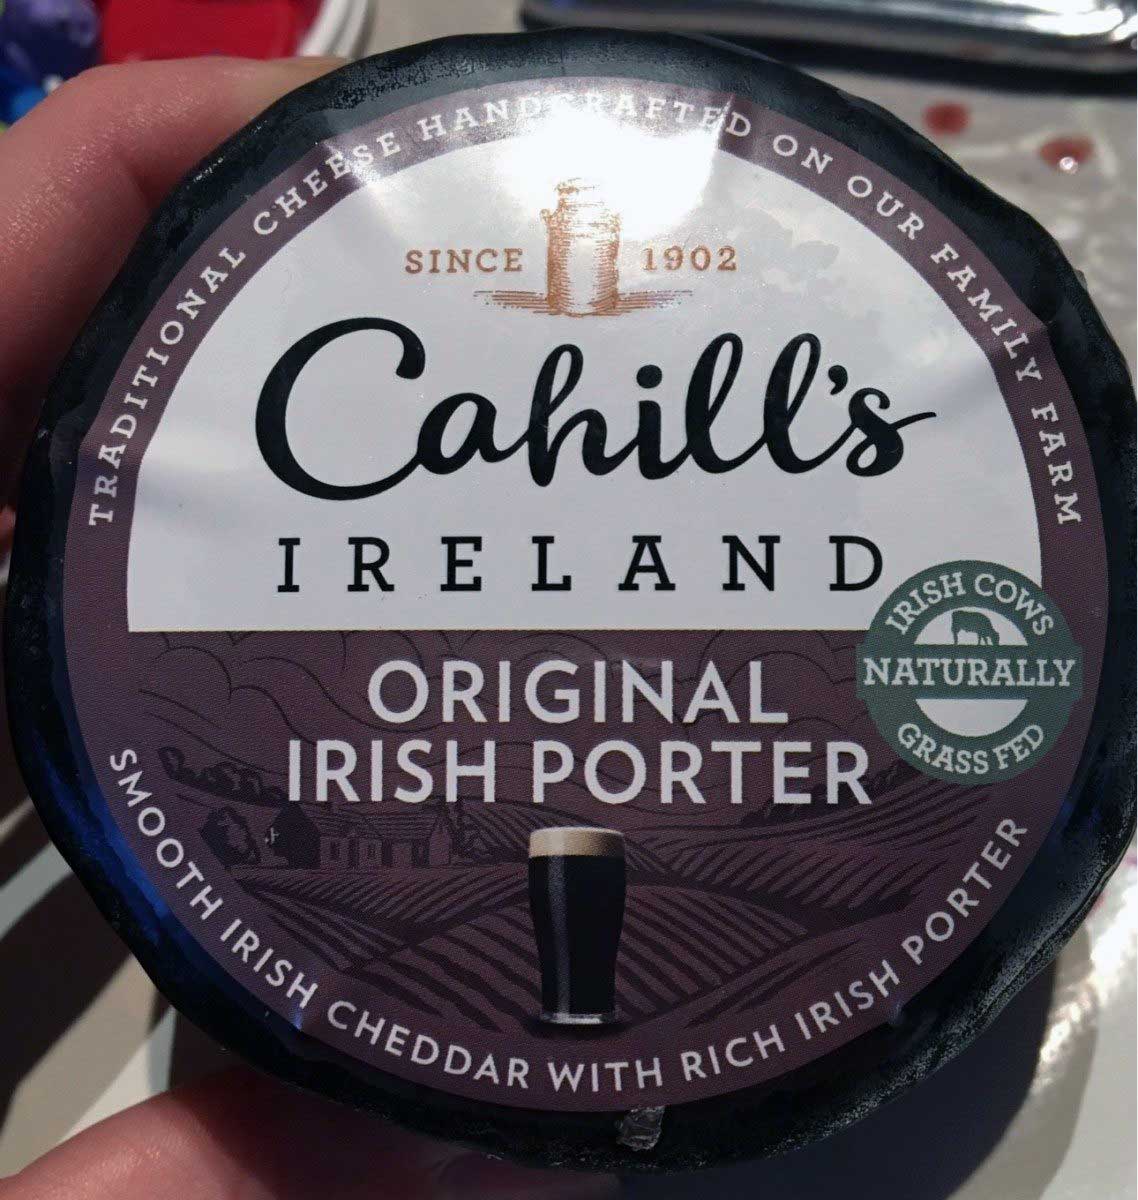 Irish Porter Cheese label